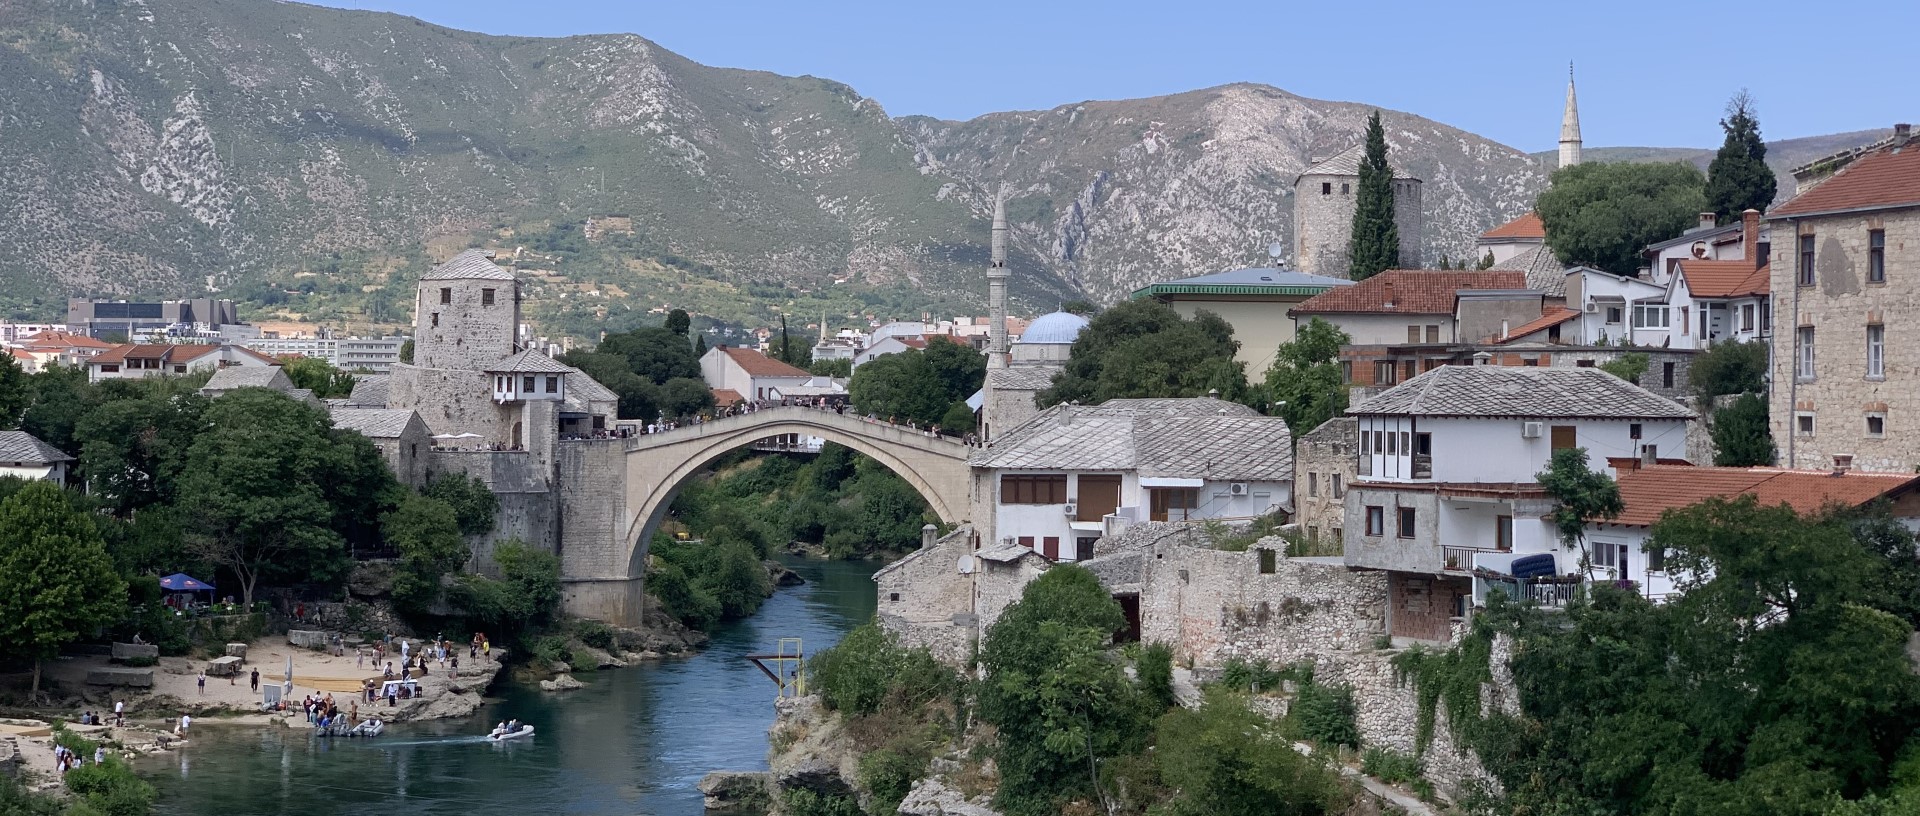 Bosnië en Herzegovina - Bjelasnica wandeltocht